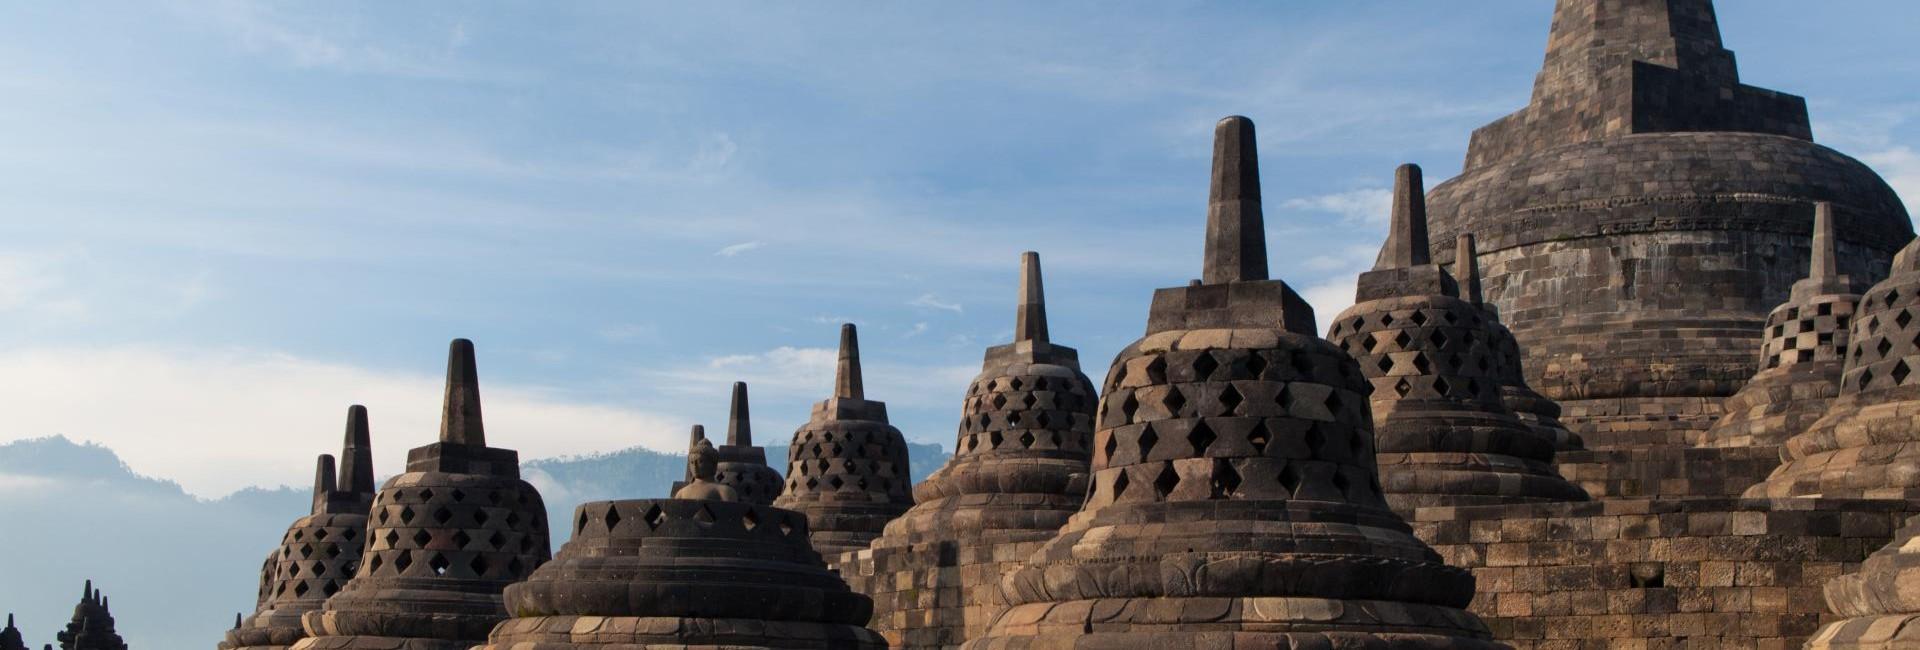 Explorer le temple de Borobudur